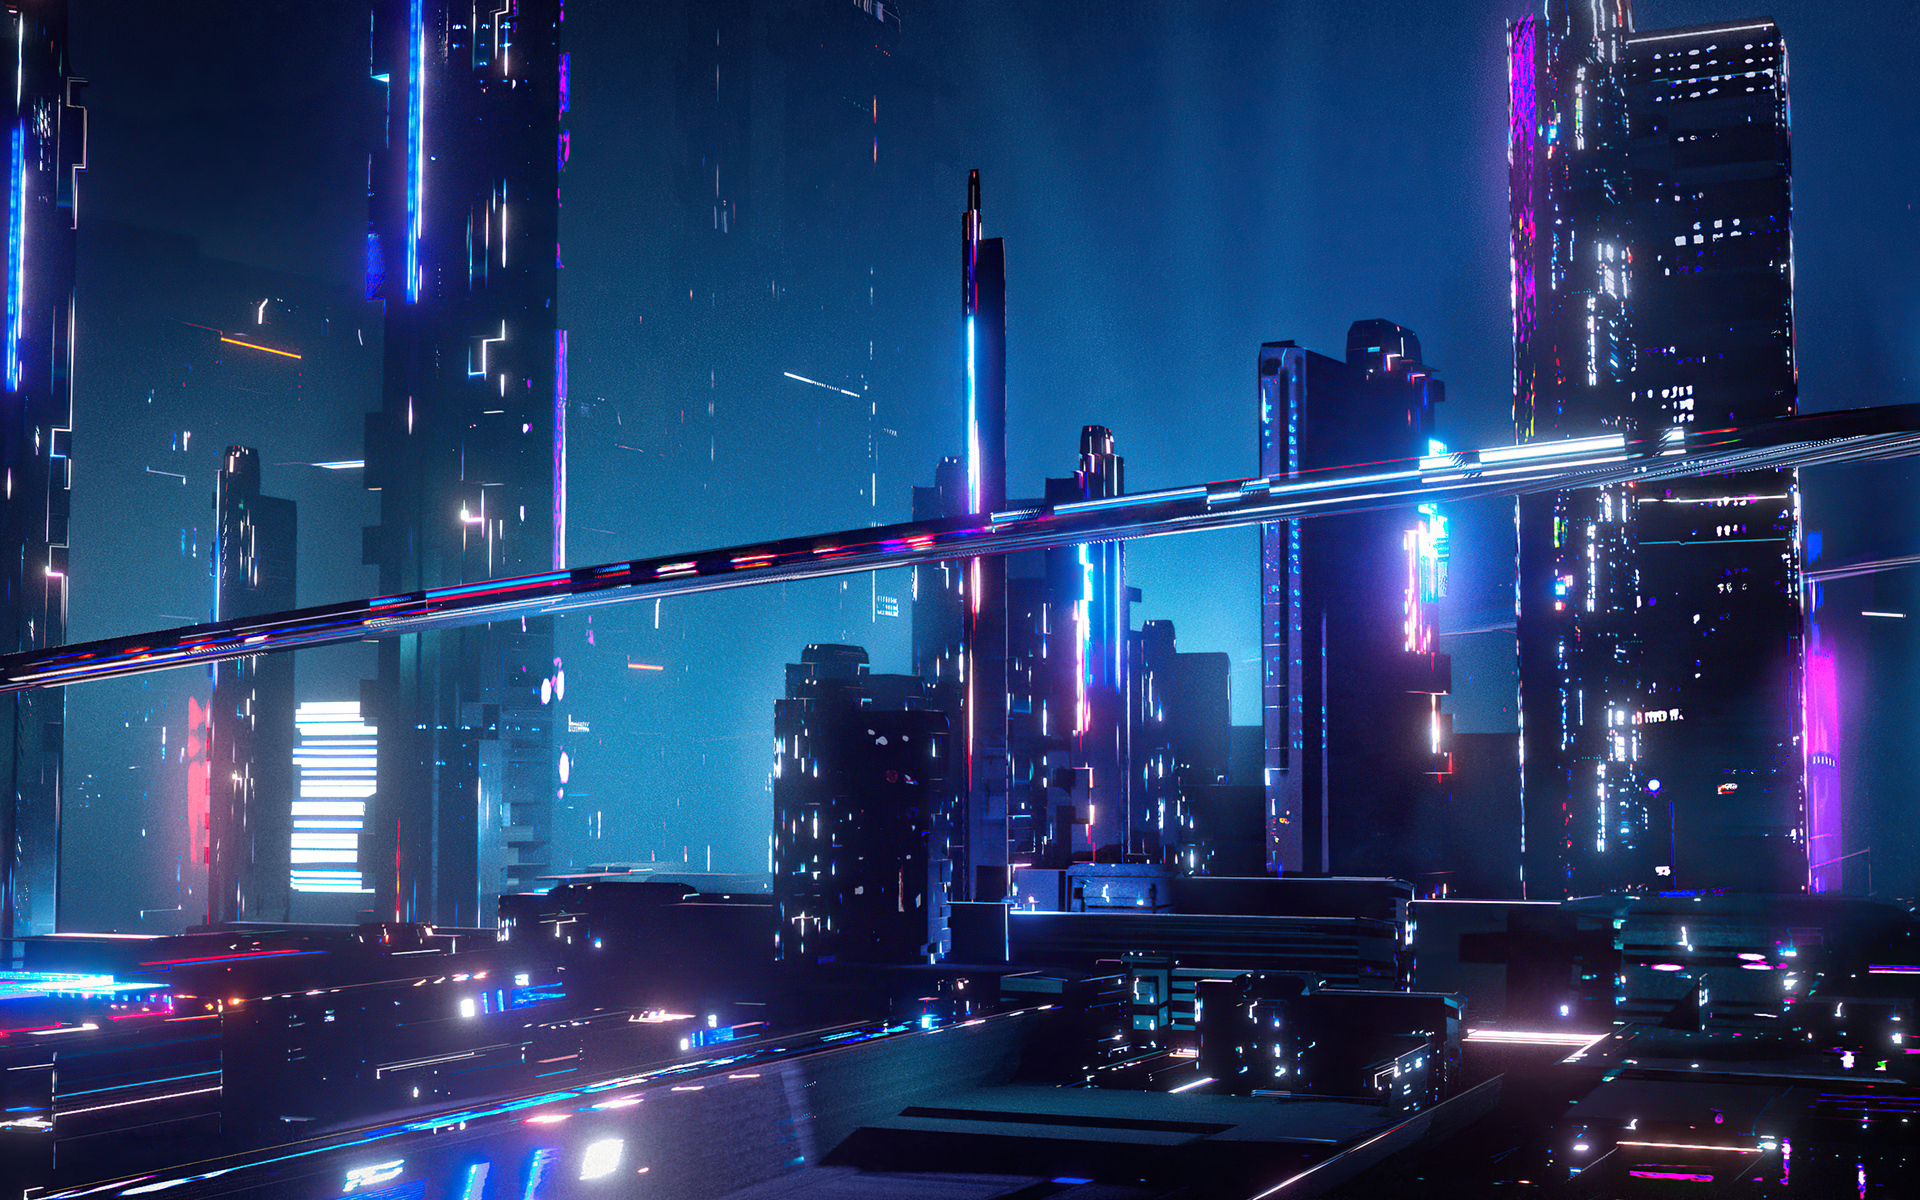 Download mobile wallpaper City, Sci Fi, Futuristic for free.